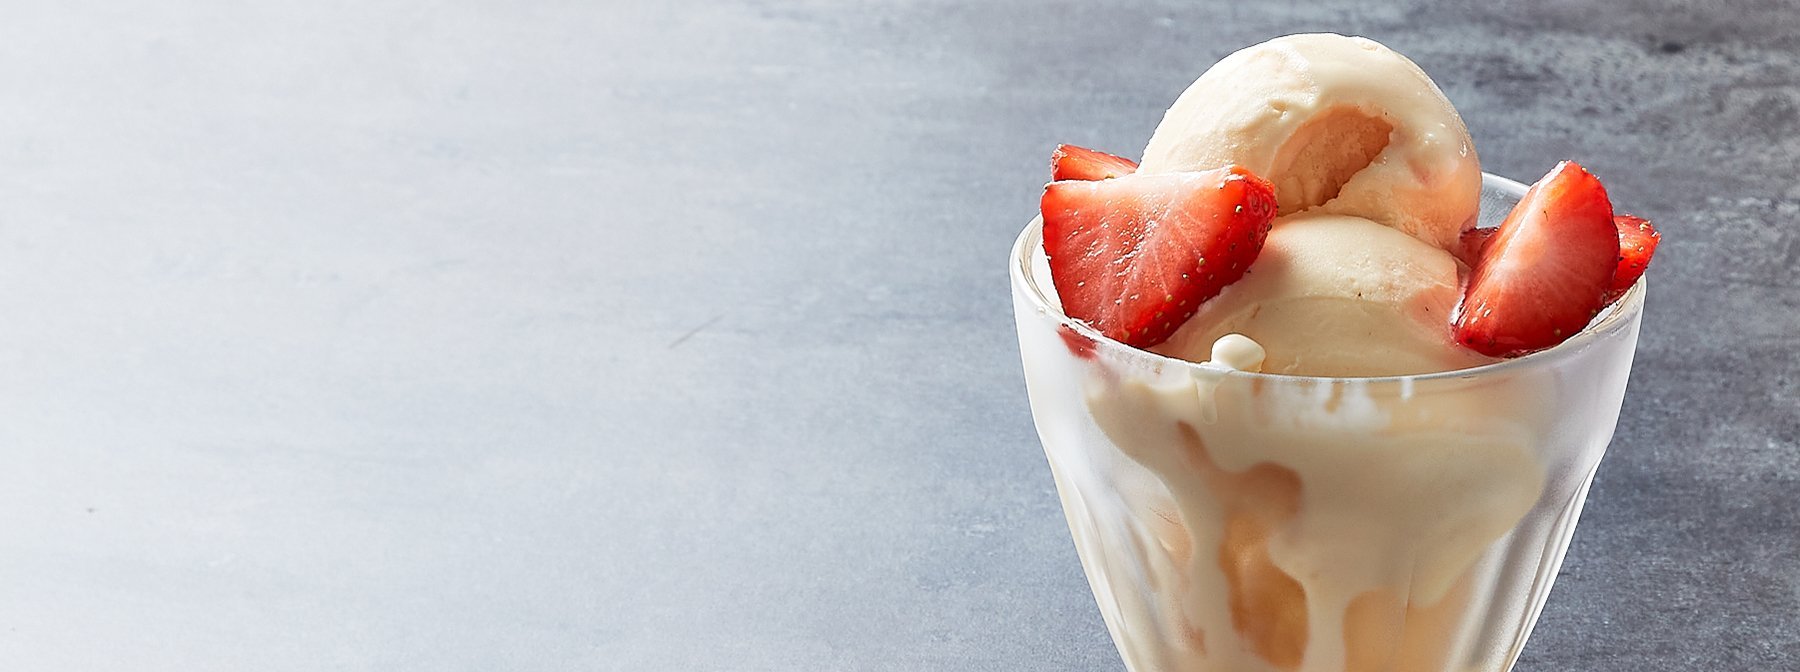 Crème Brulée proteinová zmrzlina | Světová kuchyně